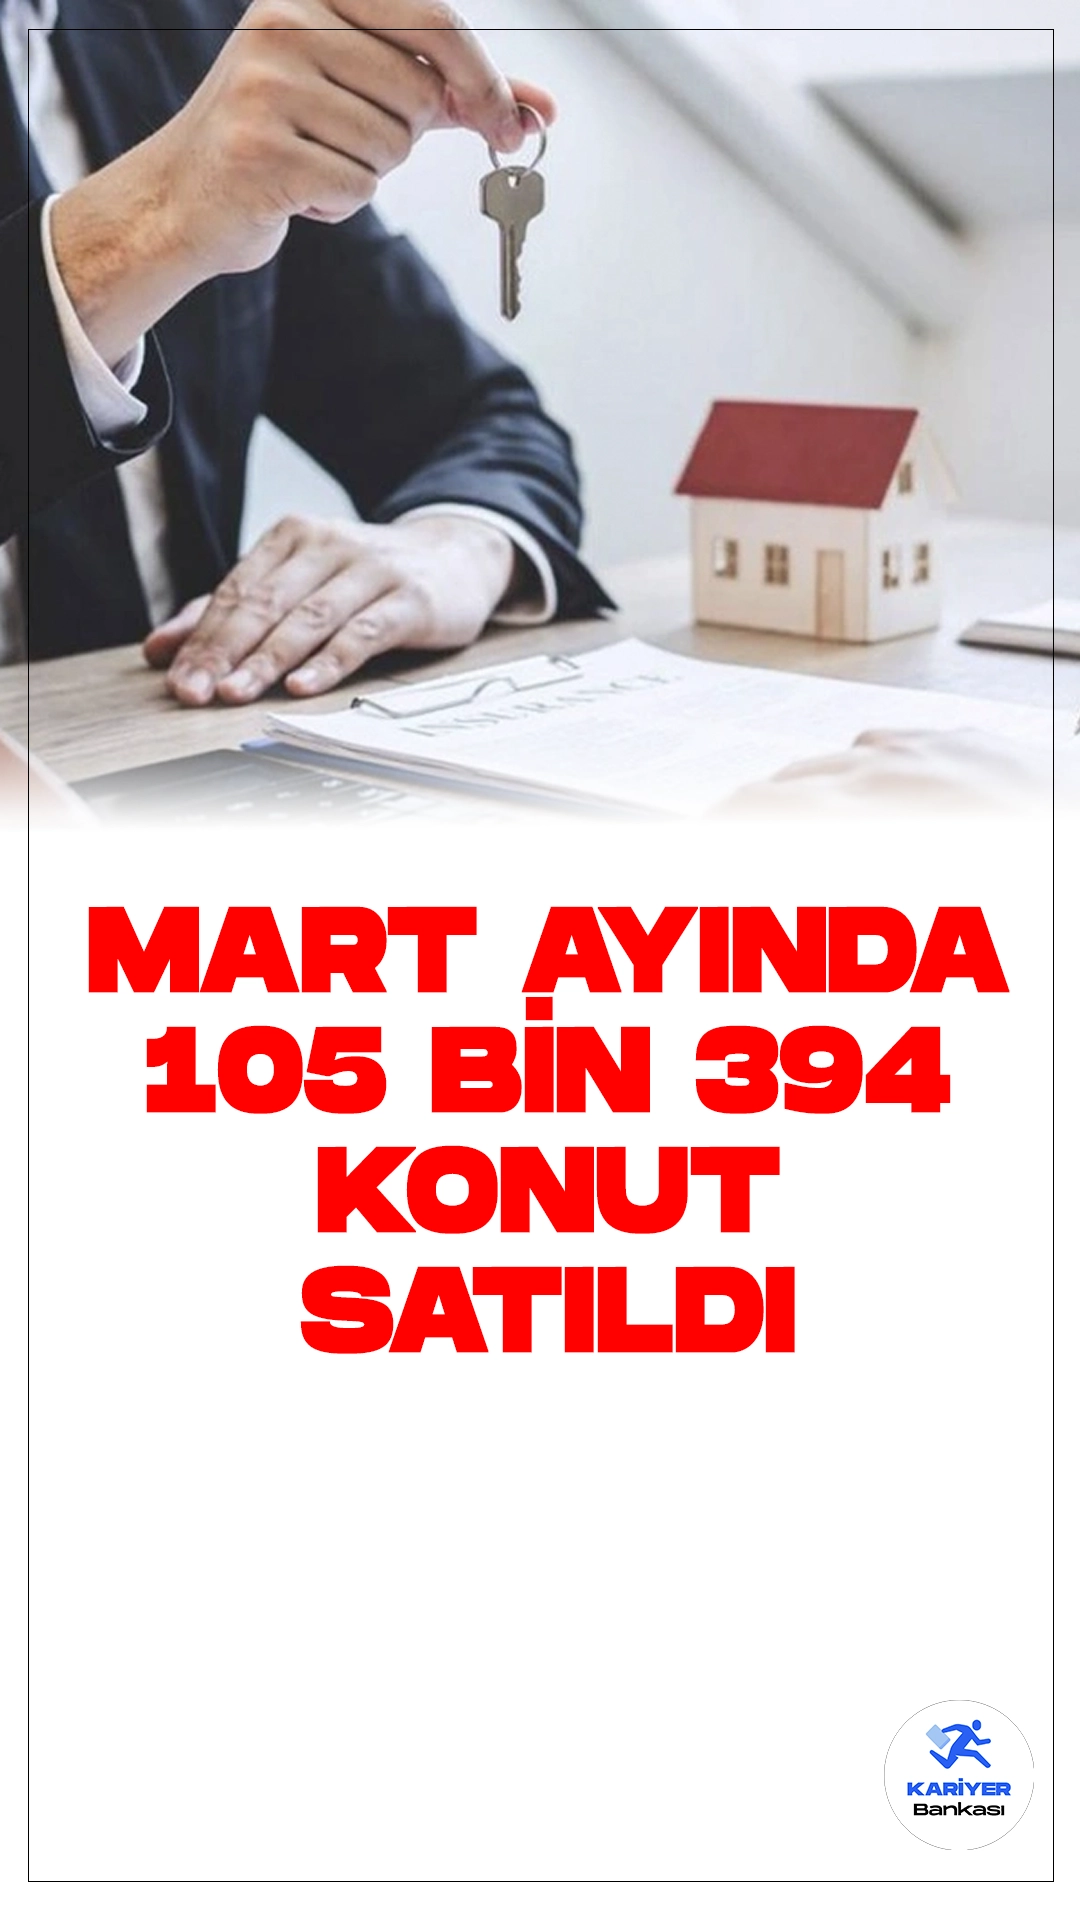 Mart ayında 105 Bin 394 Konut Satıldı.Türkiye İstatistik Kurumu (TÜİK), mart ayına ait konut satış istatistiklerini yayınladı. Mart ayında 105 bin 394 konut satıldı, bu rakam bir önceki yılın aynı dönemine göre %0,1 azalış gösterdi.